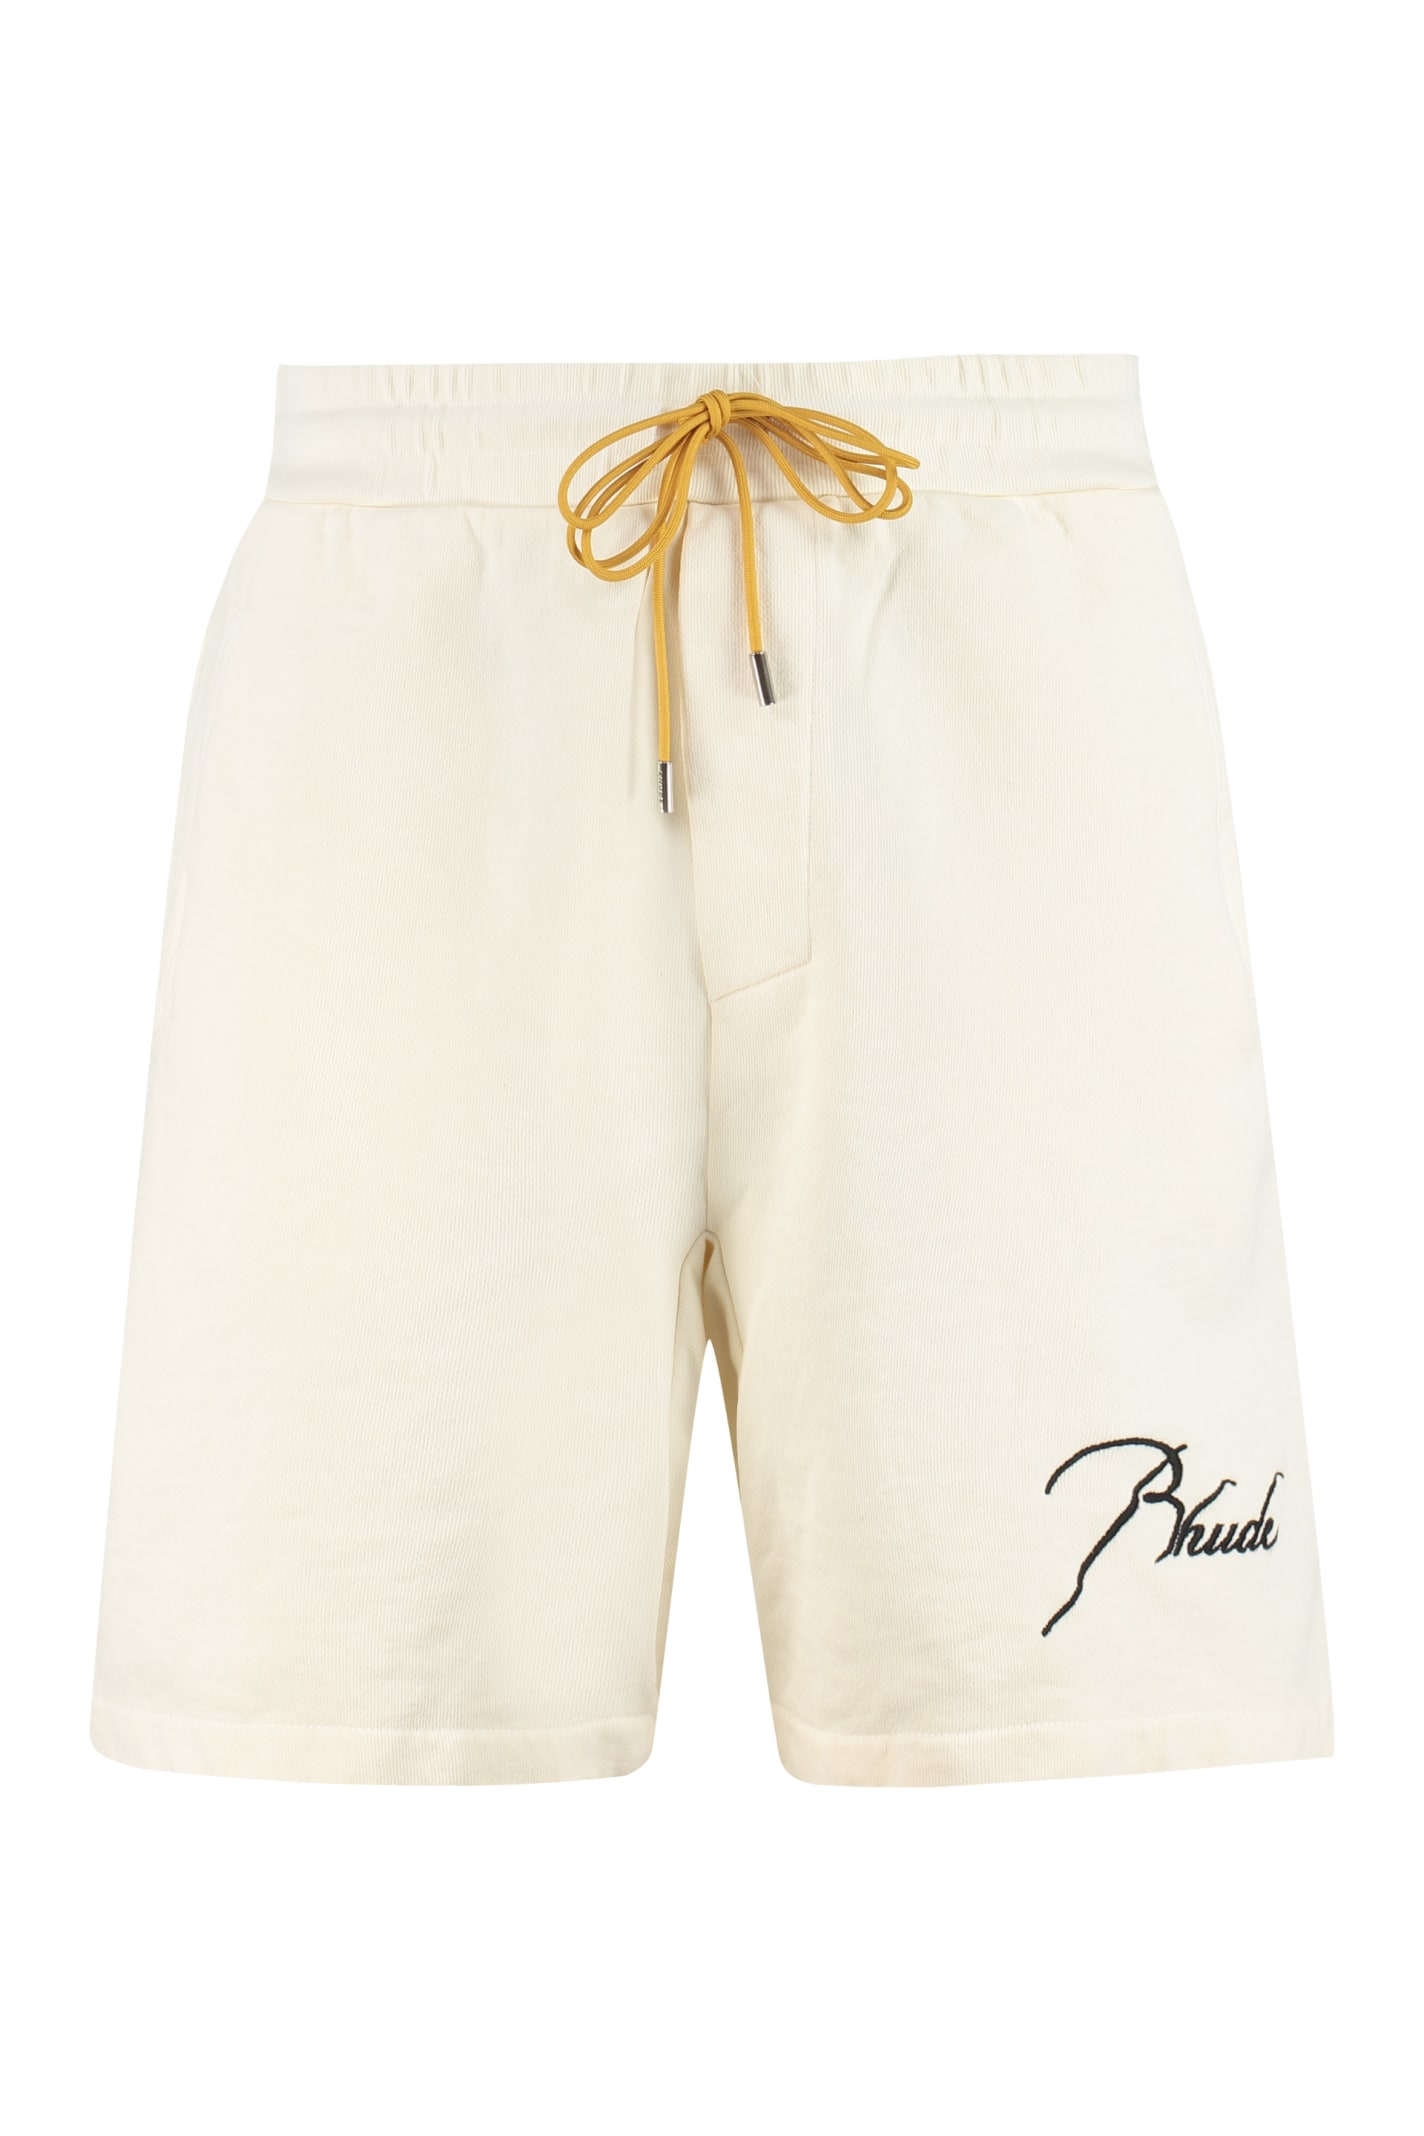 Rhude Cotton Bermuda Shorts